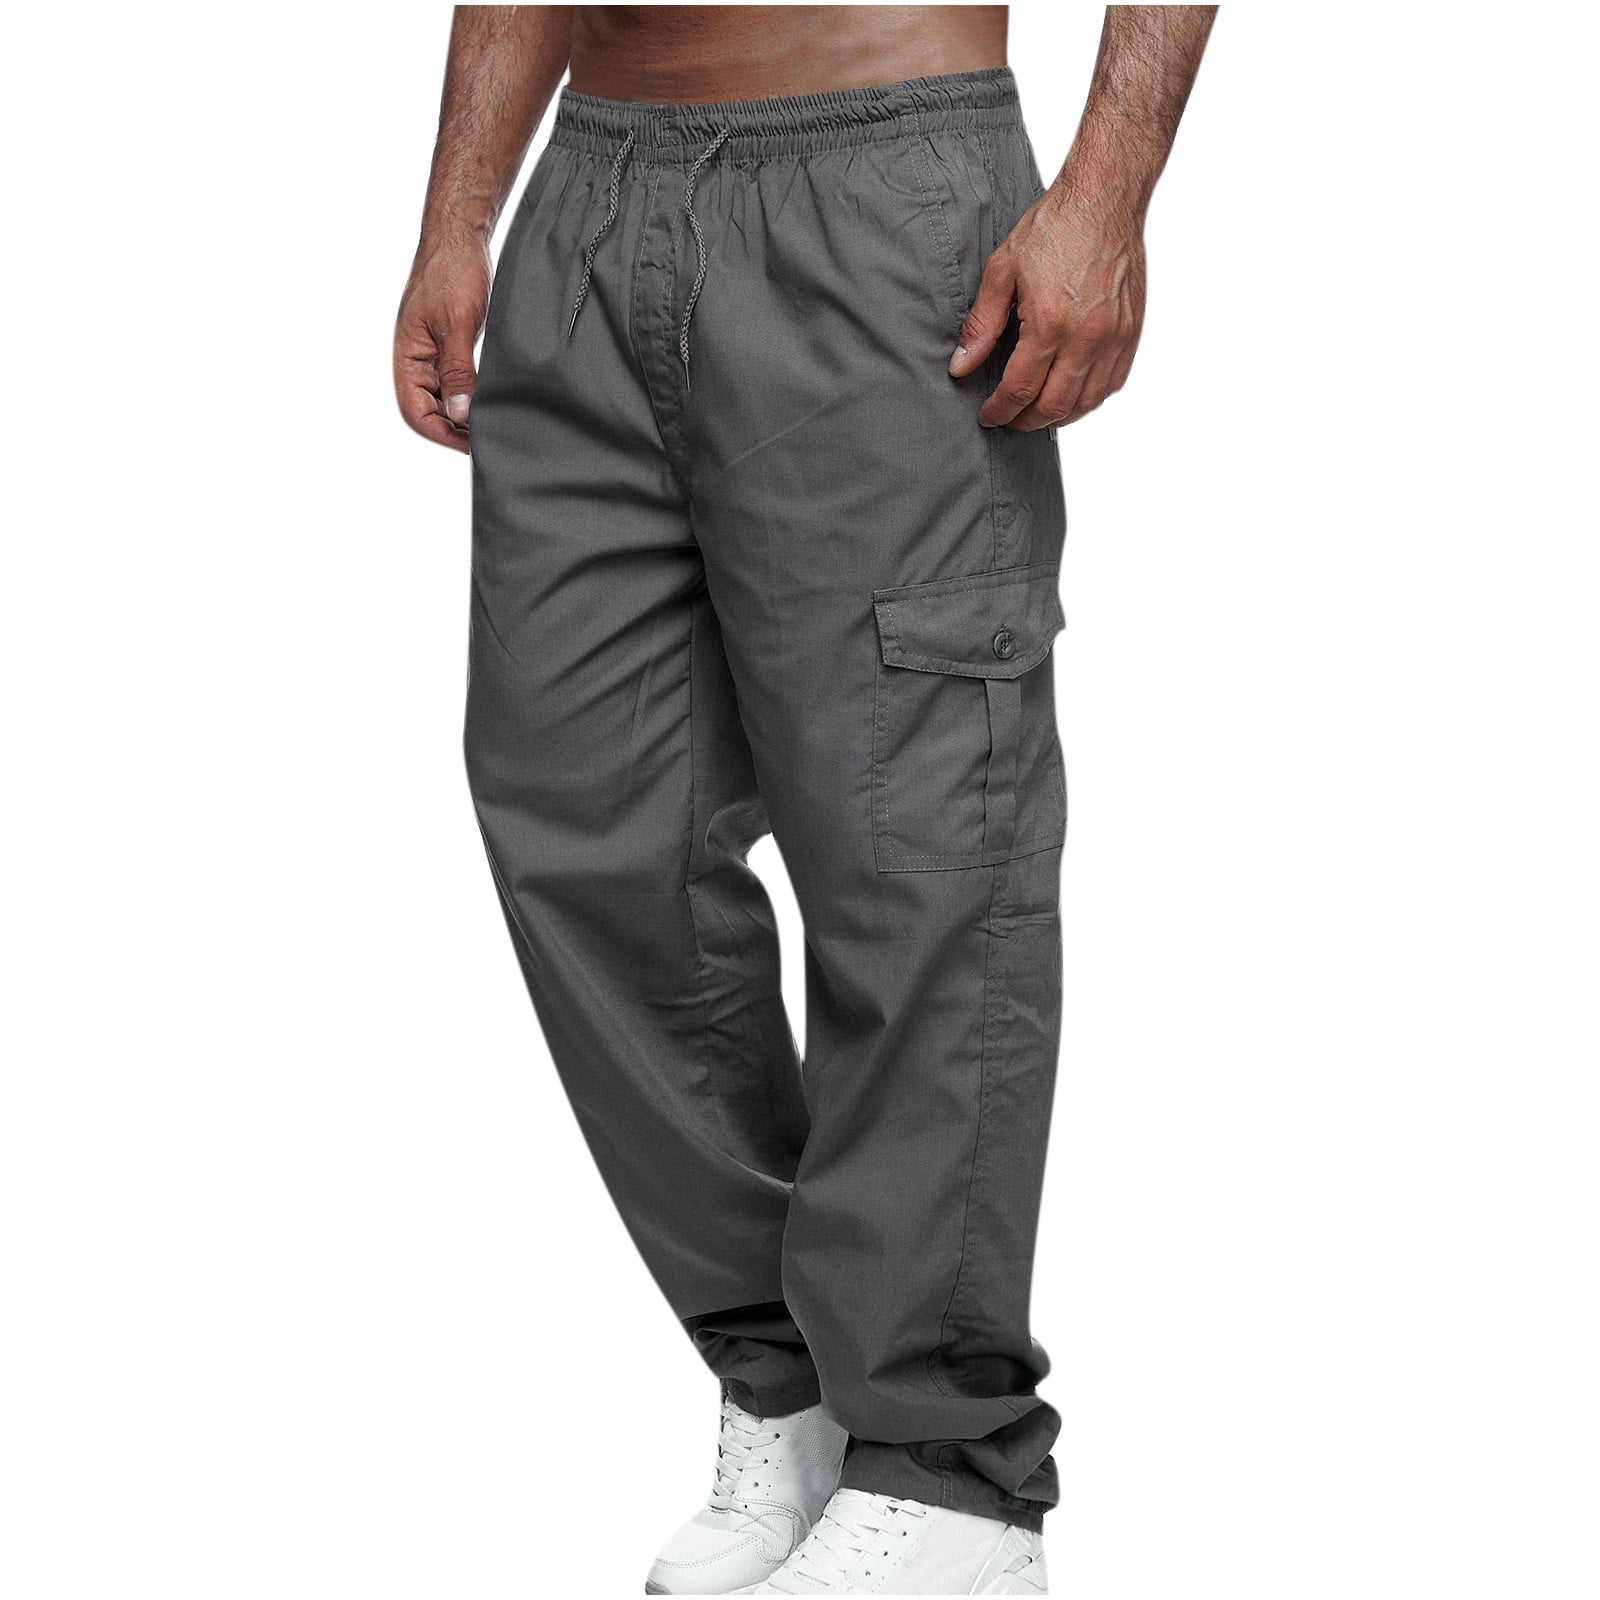 Genuine Dickies Men's Essential Work Pants - Walmart.com